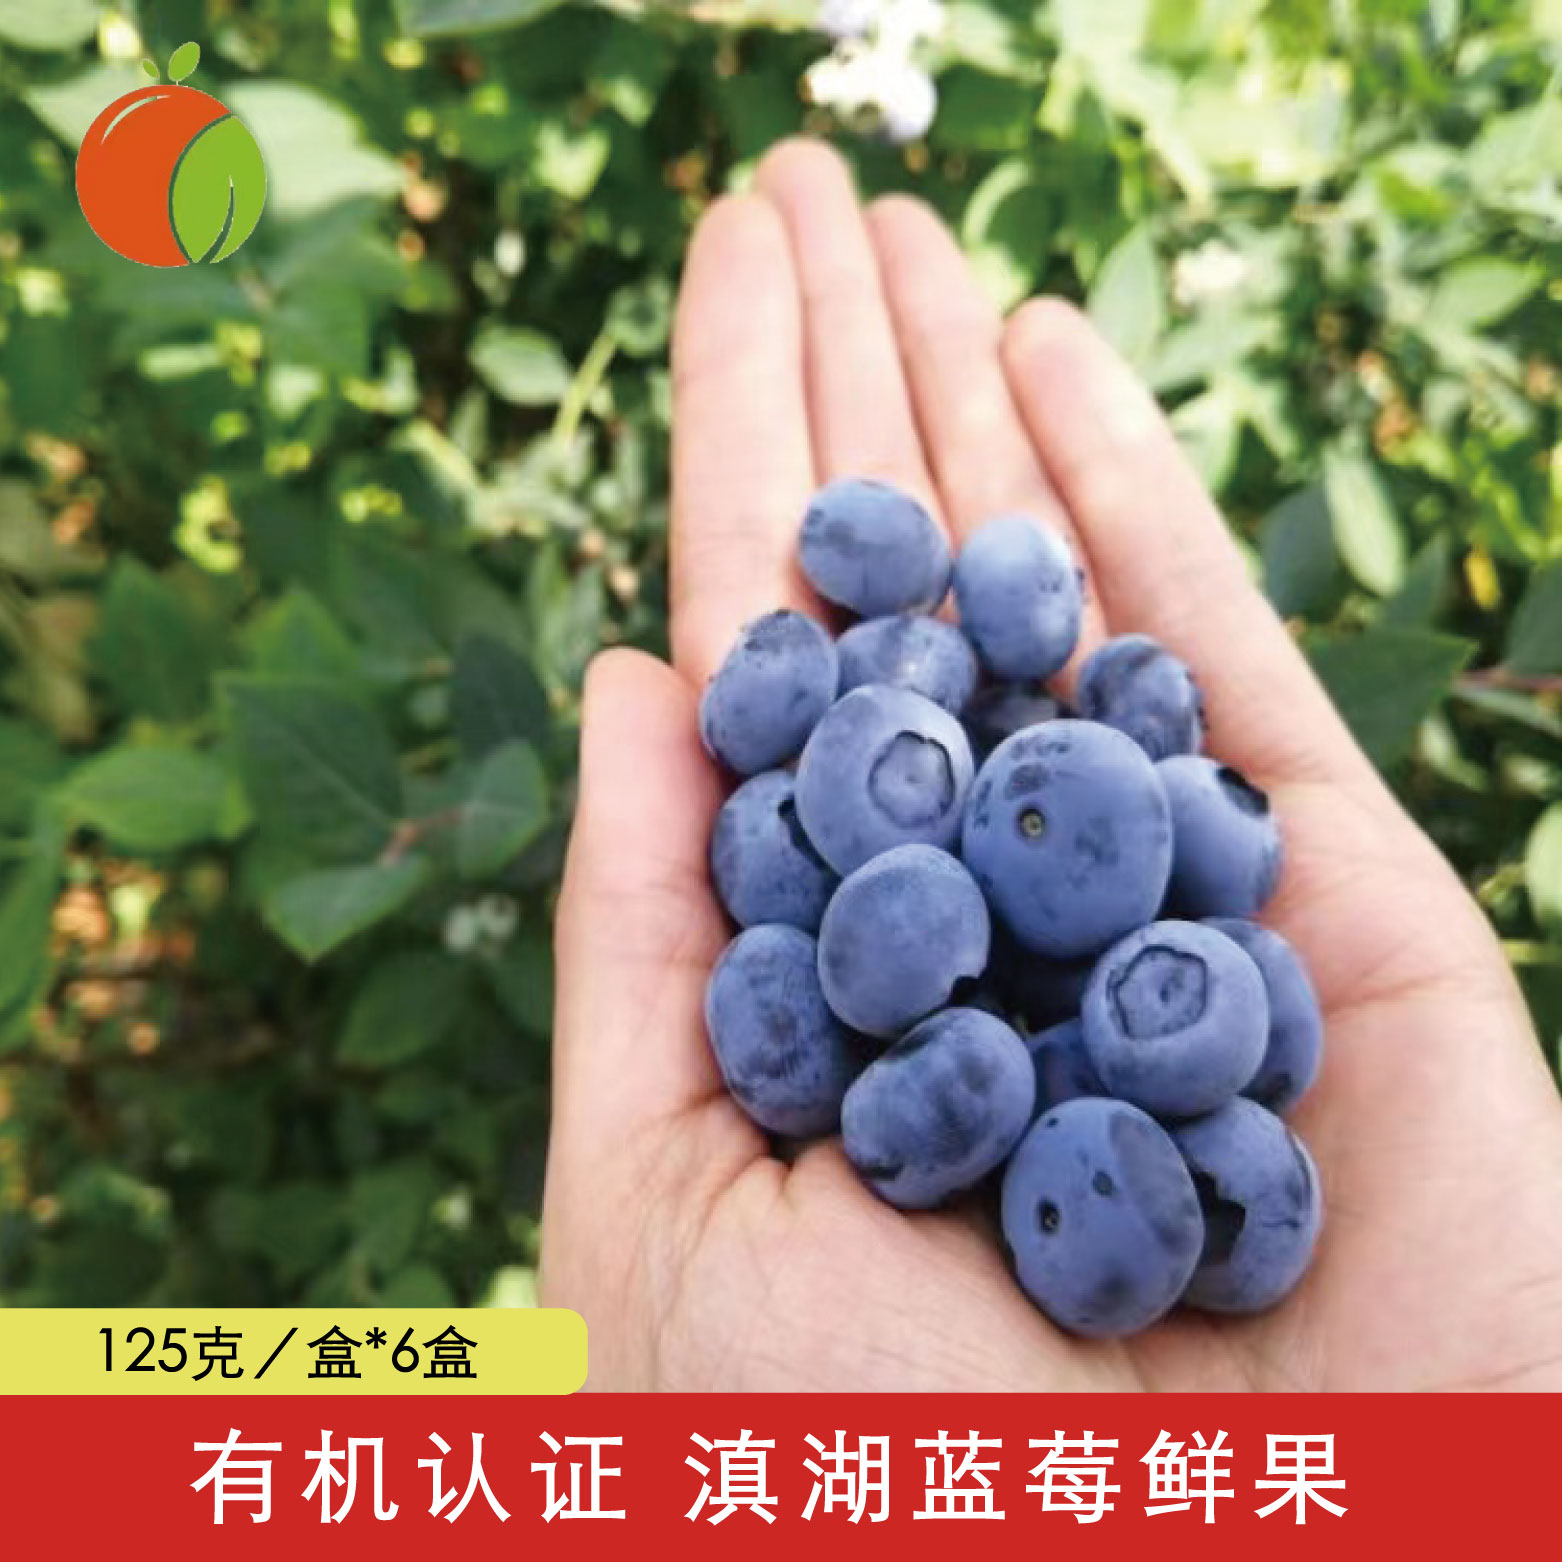 有机认证 云南滇湖蓝莓鲜果 香甜多汁果味浓郁口感丰富 顺丰空运